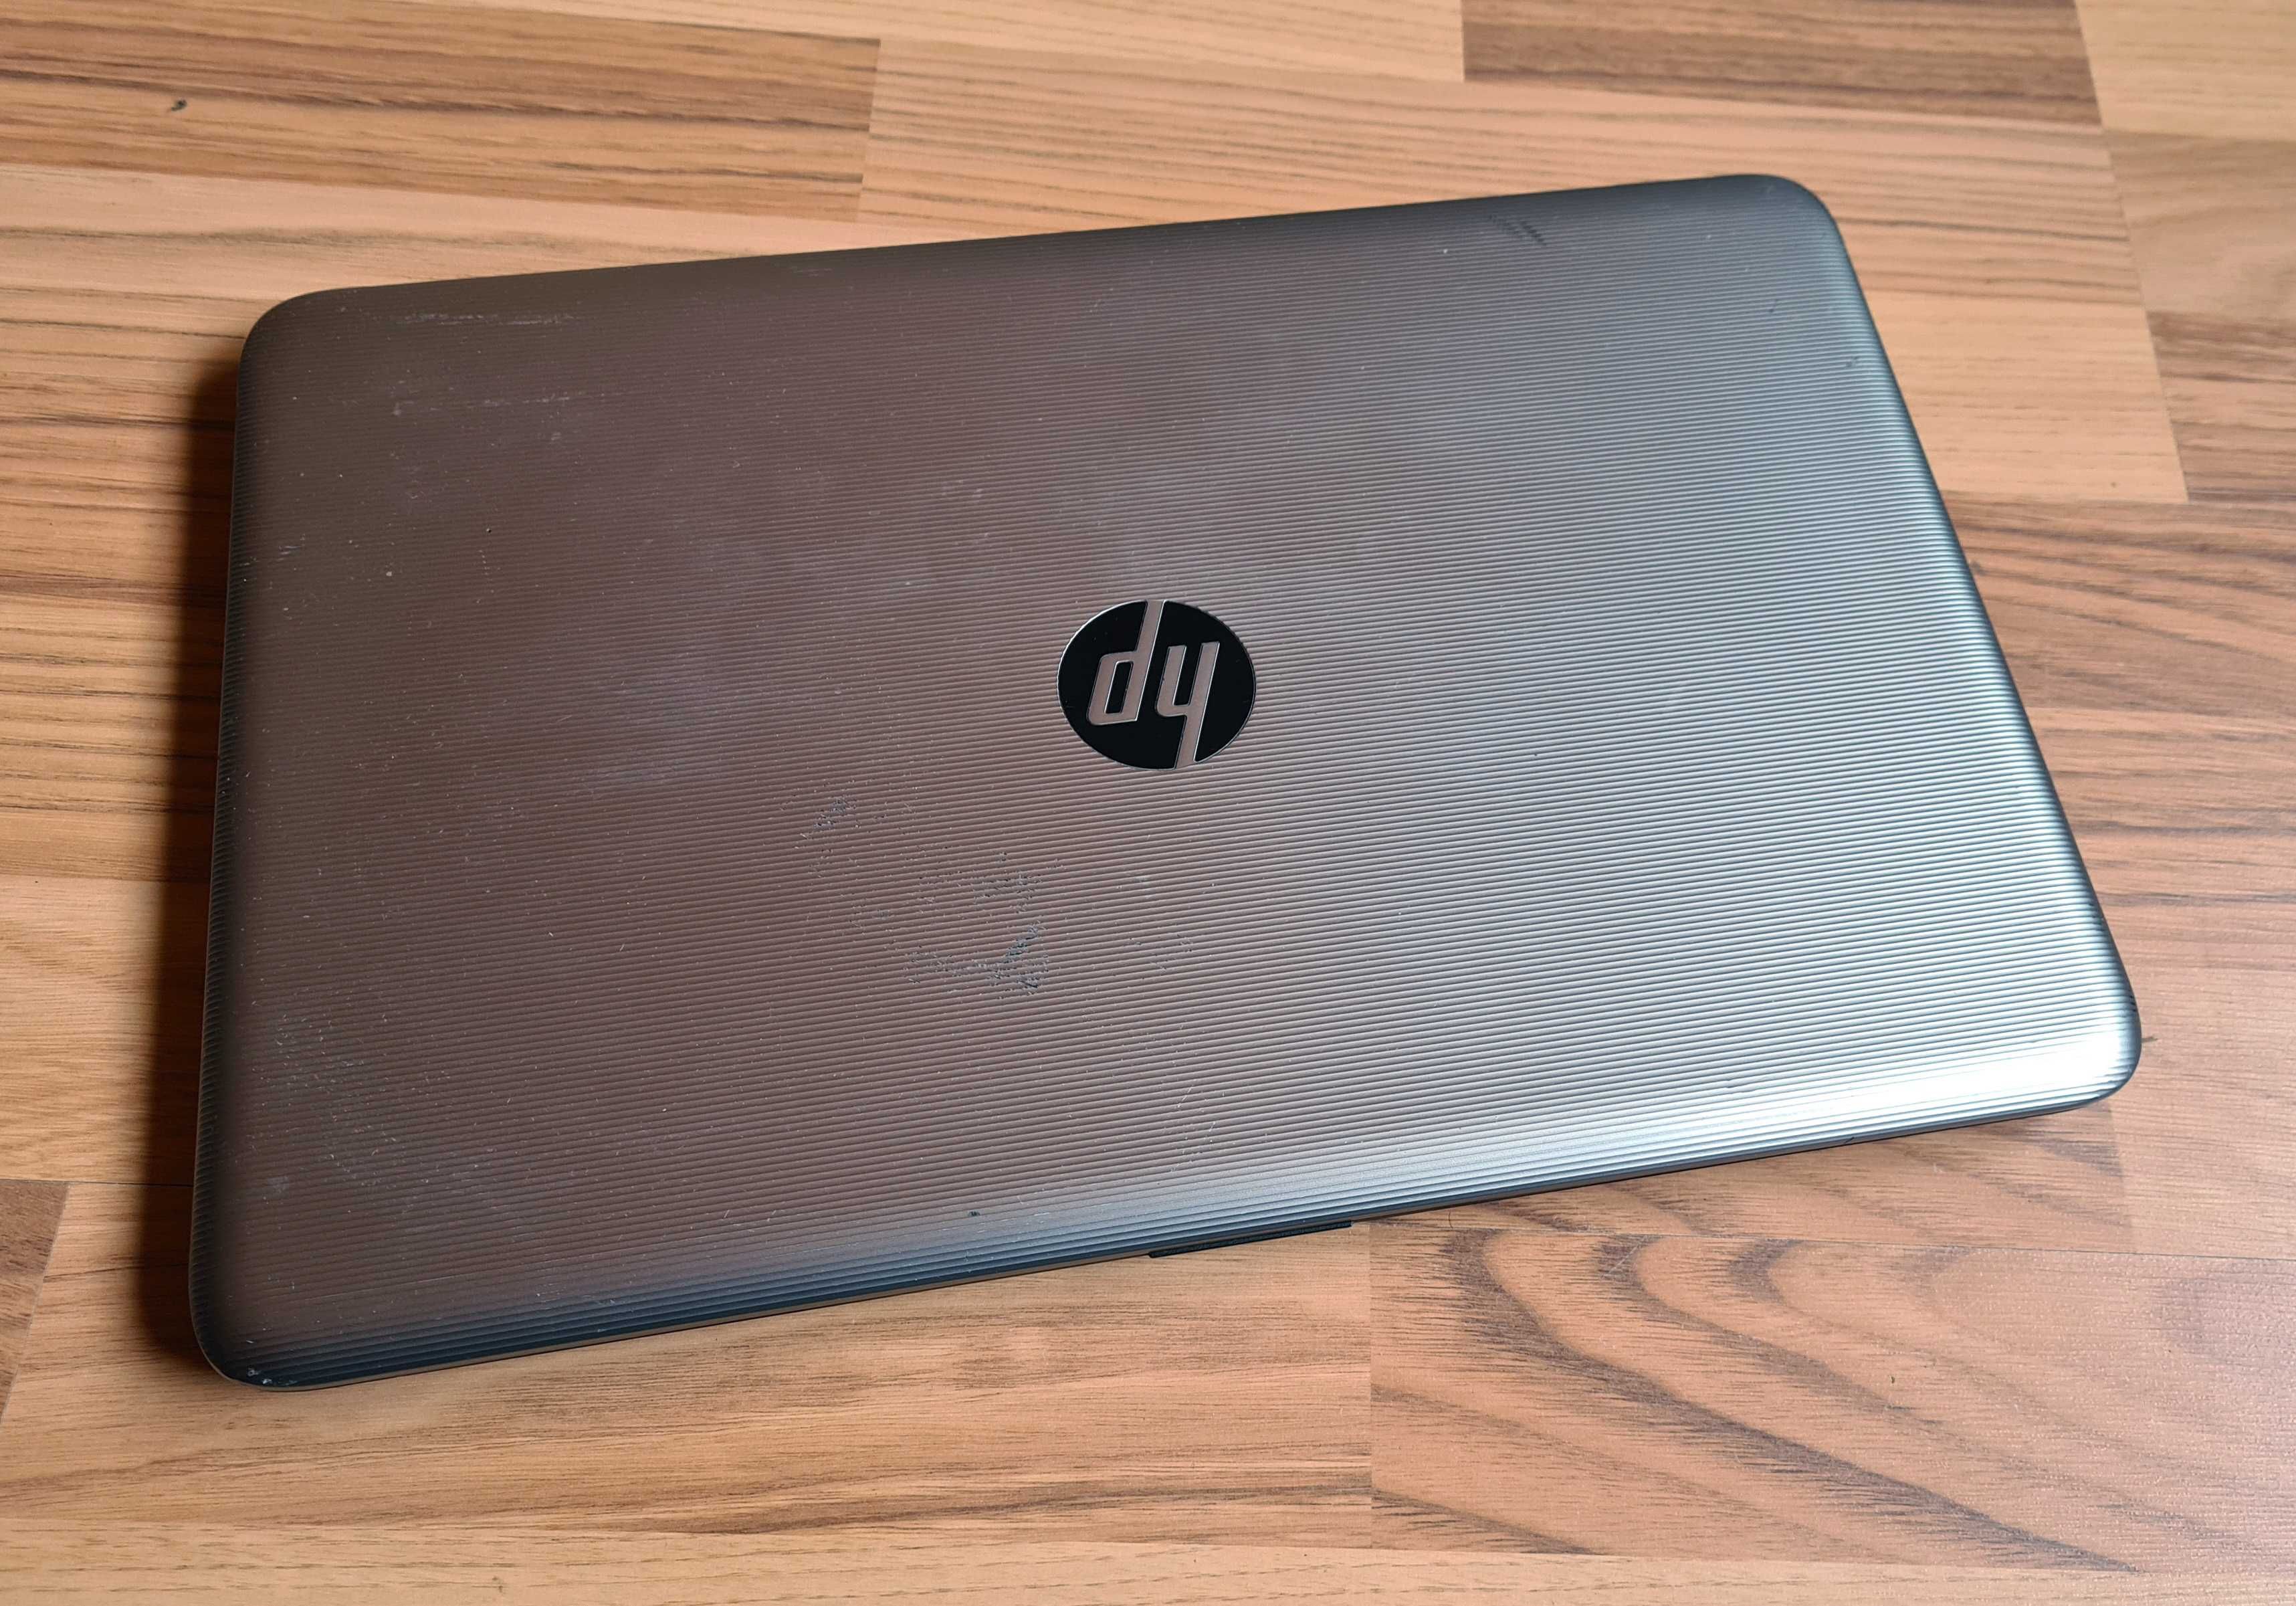 Laptop Slim HP 15" Full HD, i3-5005u, 6 GB Ram, SSD 1280 GB bateria 3h